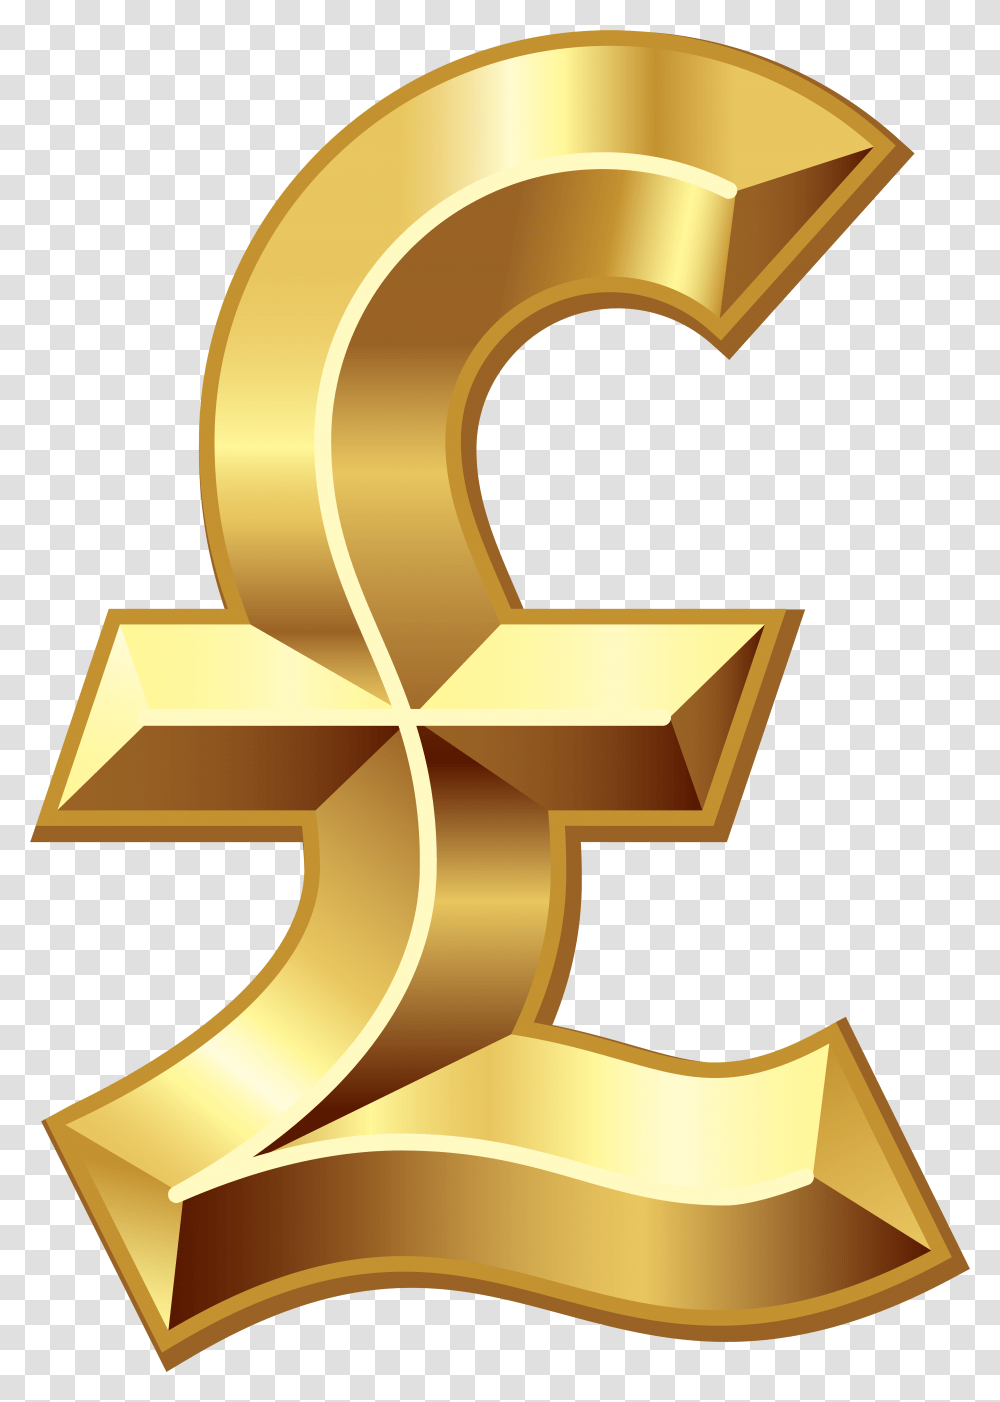 Download Sterling Pound Symbol Dollar Background Pound Sign, Number, Text, Gold, Star Symbol Transparent Png